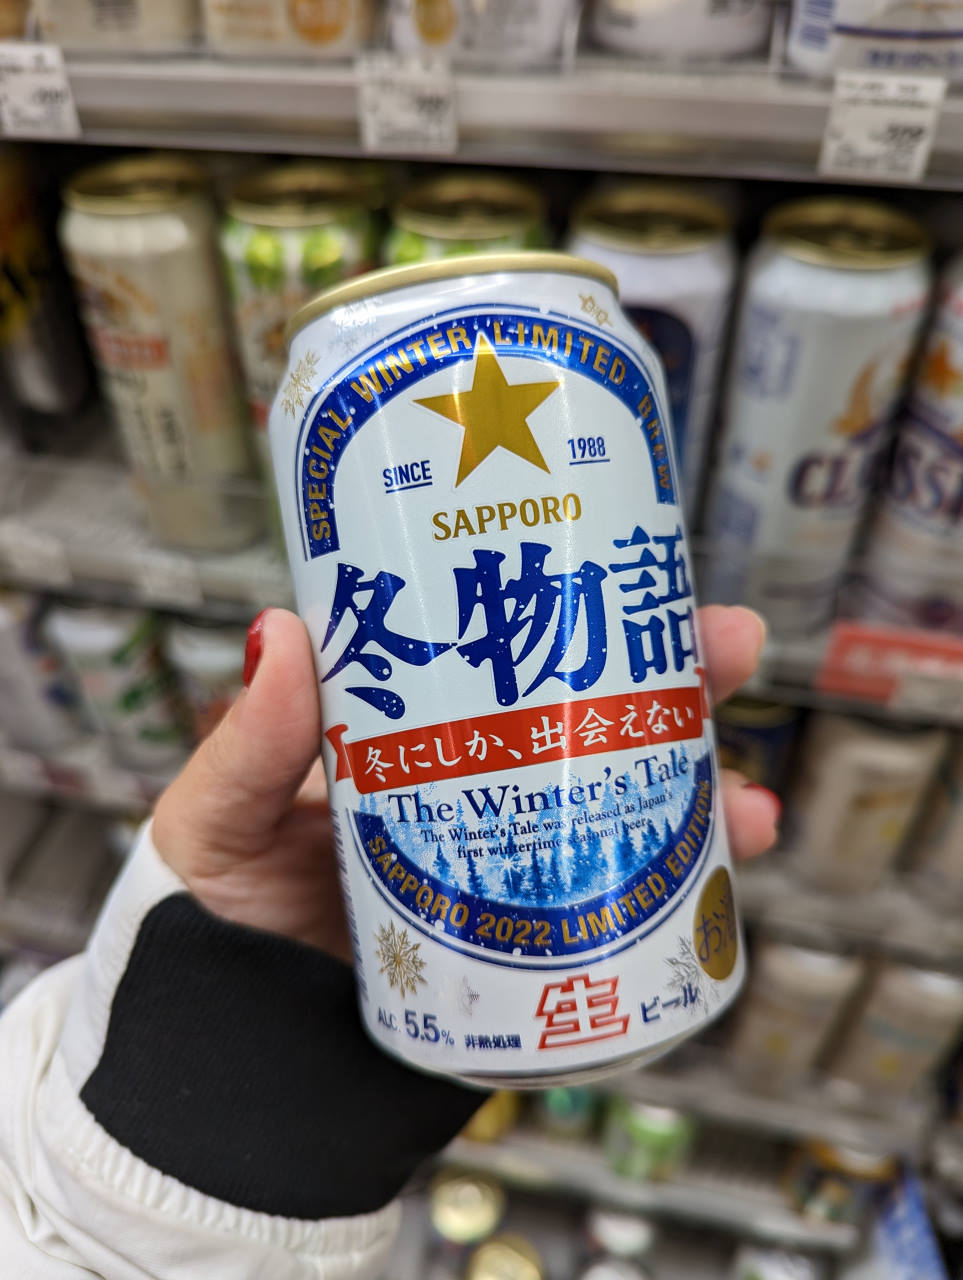 日本Lawson、7-11、FamilyMart超商必買！2022年爆紅的養樂多Yakult1000、炸雞塊、限定版啤酒